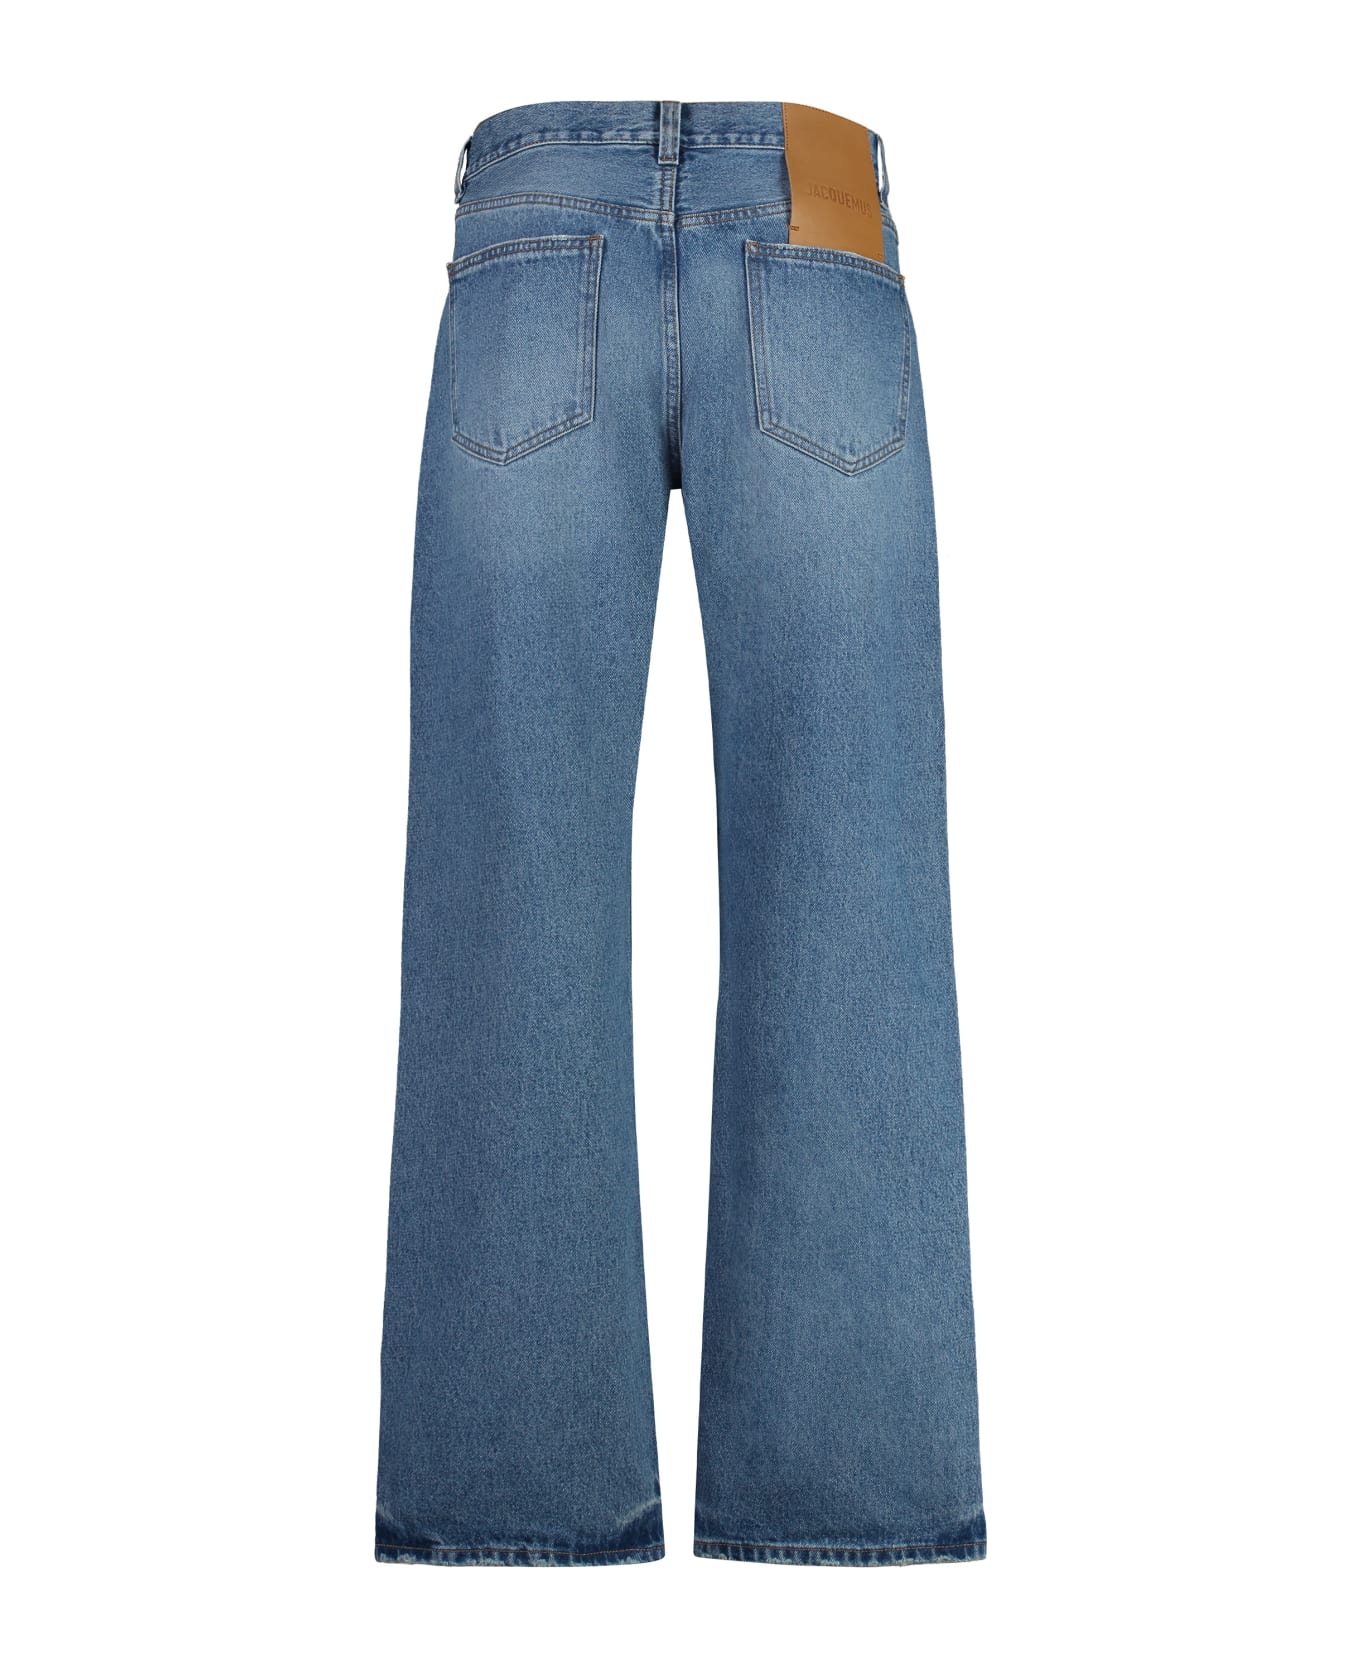 Jacquemus Nîmes 5-pocket Straight-leg Jeans - 33C BLUE/TABAC